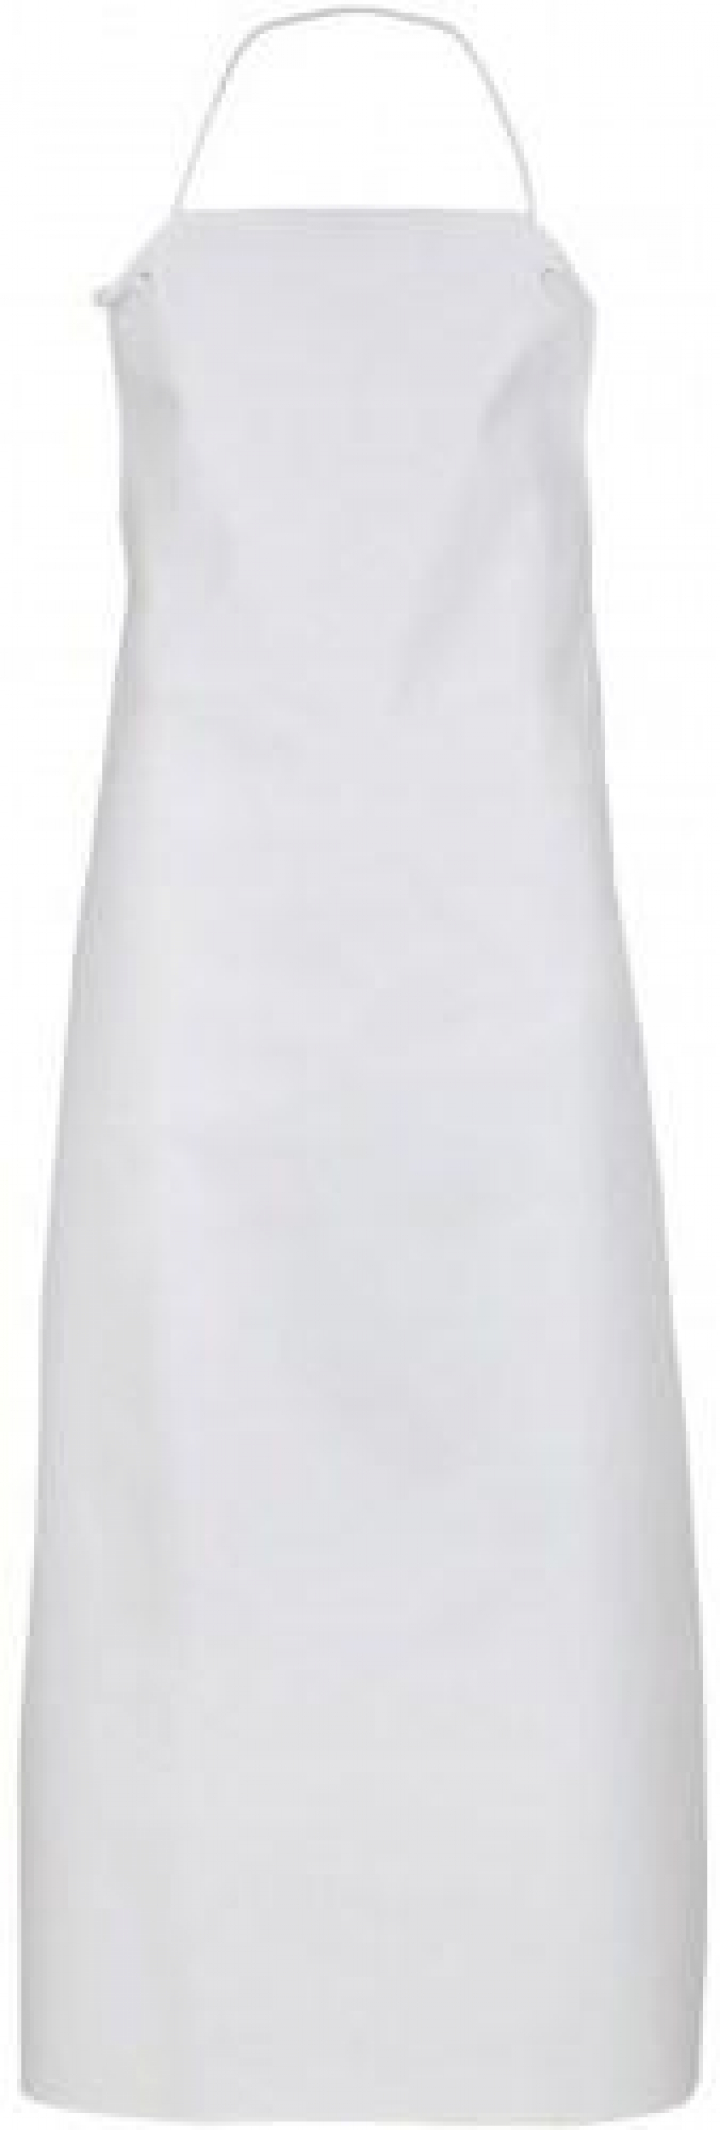 Avental em tela de nylon com cordão na cintura branco 110x70cm